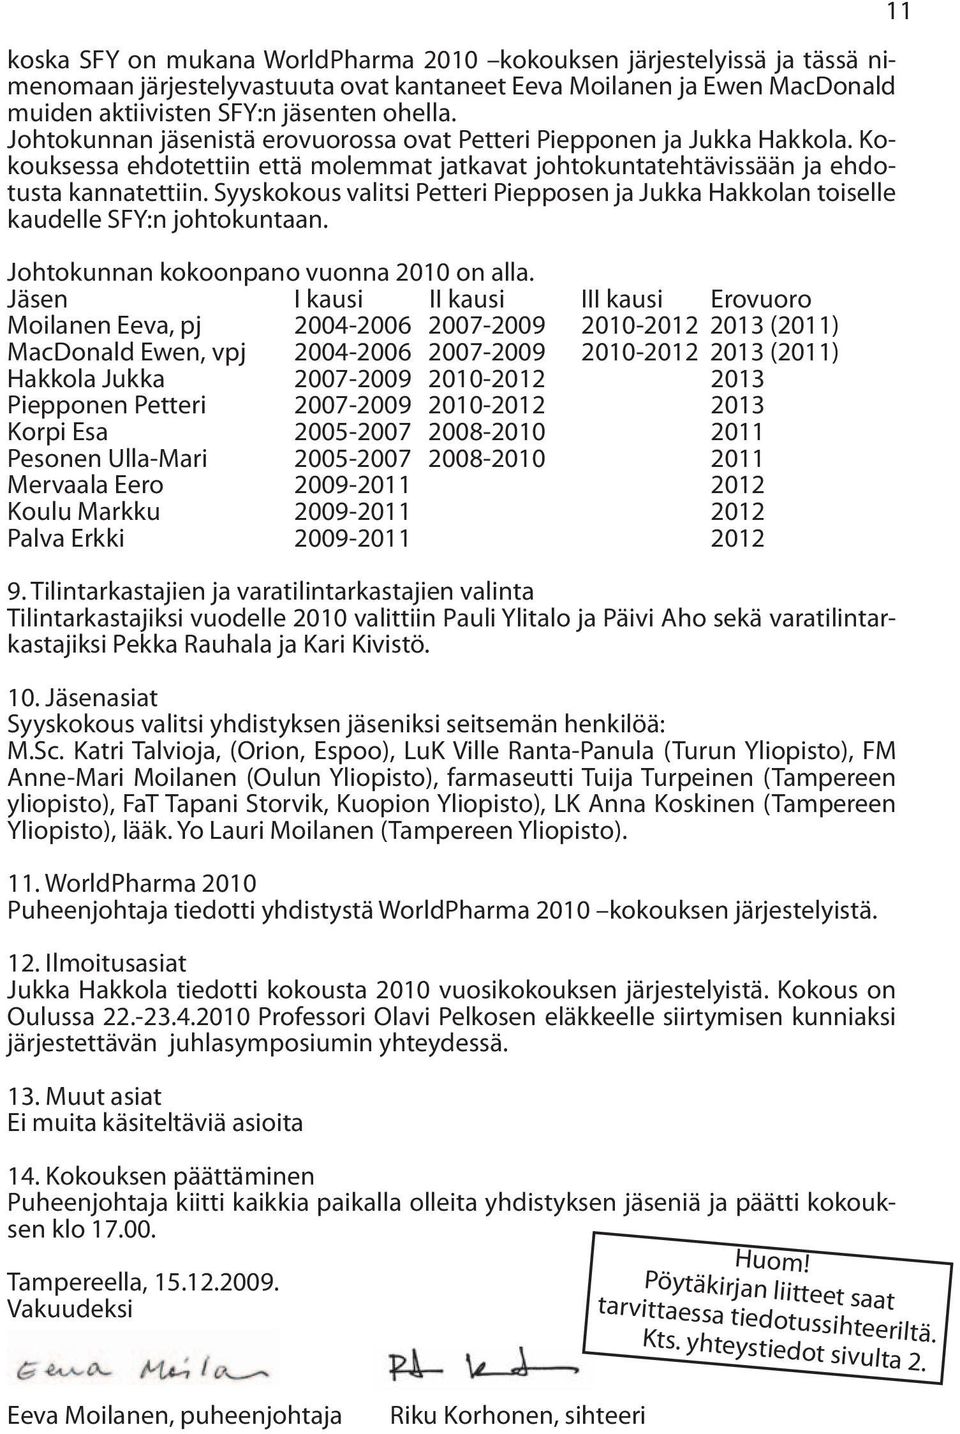 Syyskokous valitsi Petteri Piepposen ja Jukka Hakkolan toiselle kaudelle SFY:n johtokuntaan. Johtokunnan kokoonpano vuonna 2010 on alla.